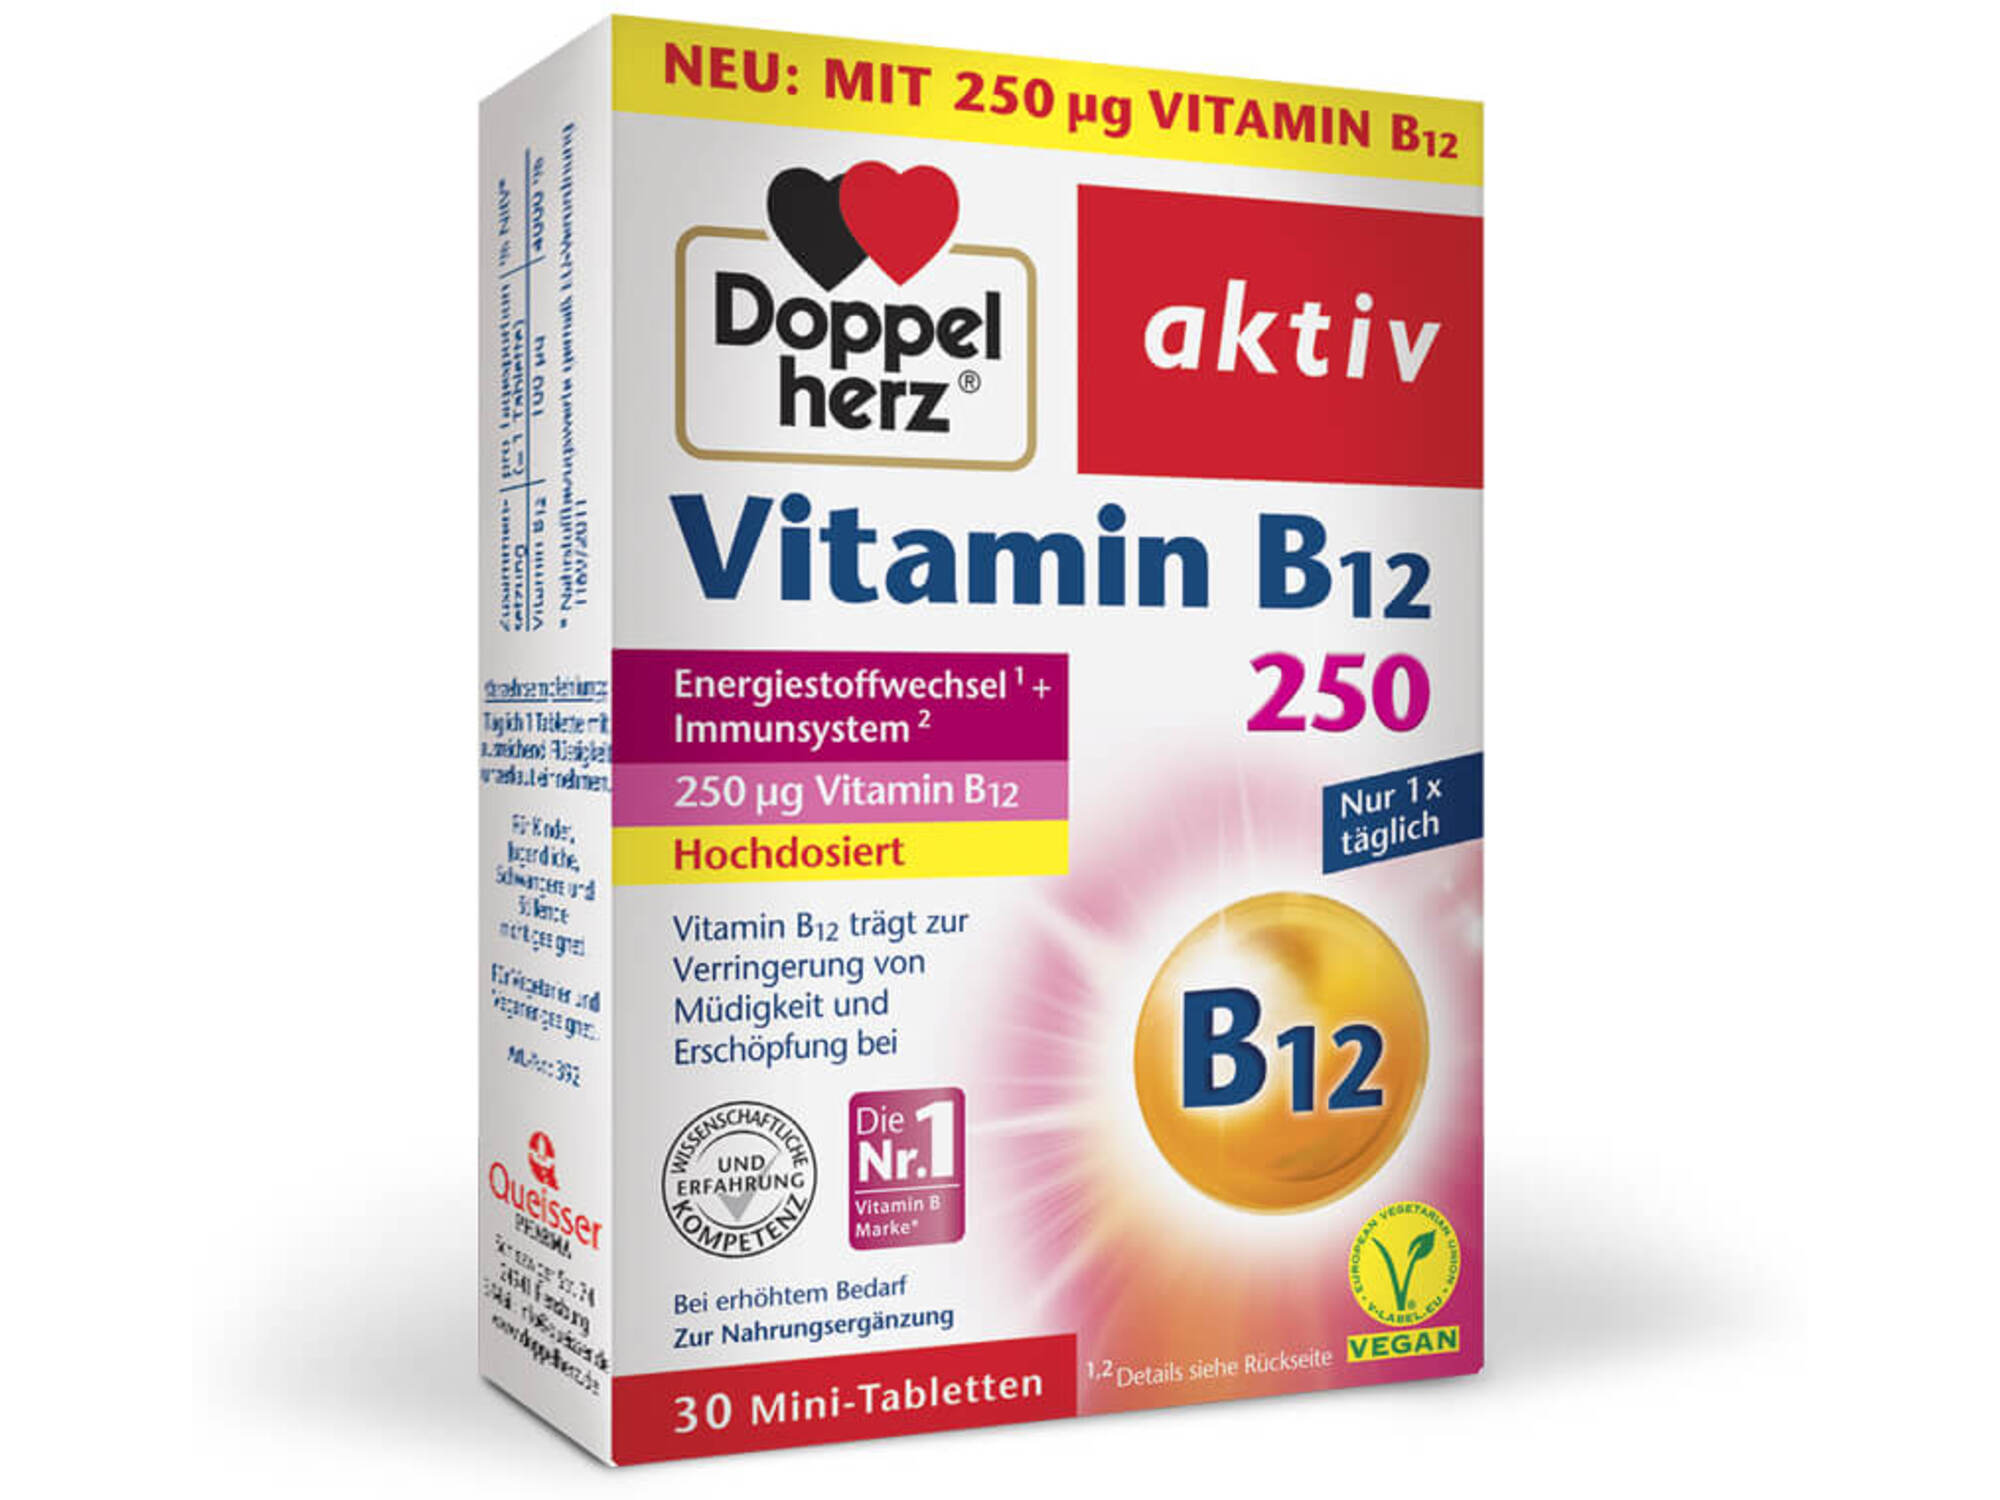 Doppelherz Aktiv Vitamin B12